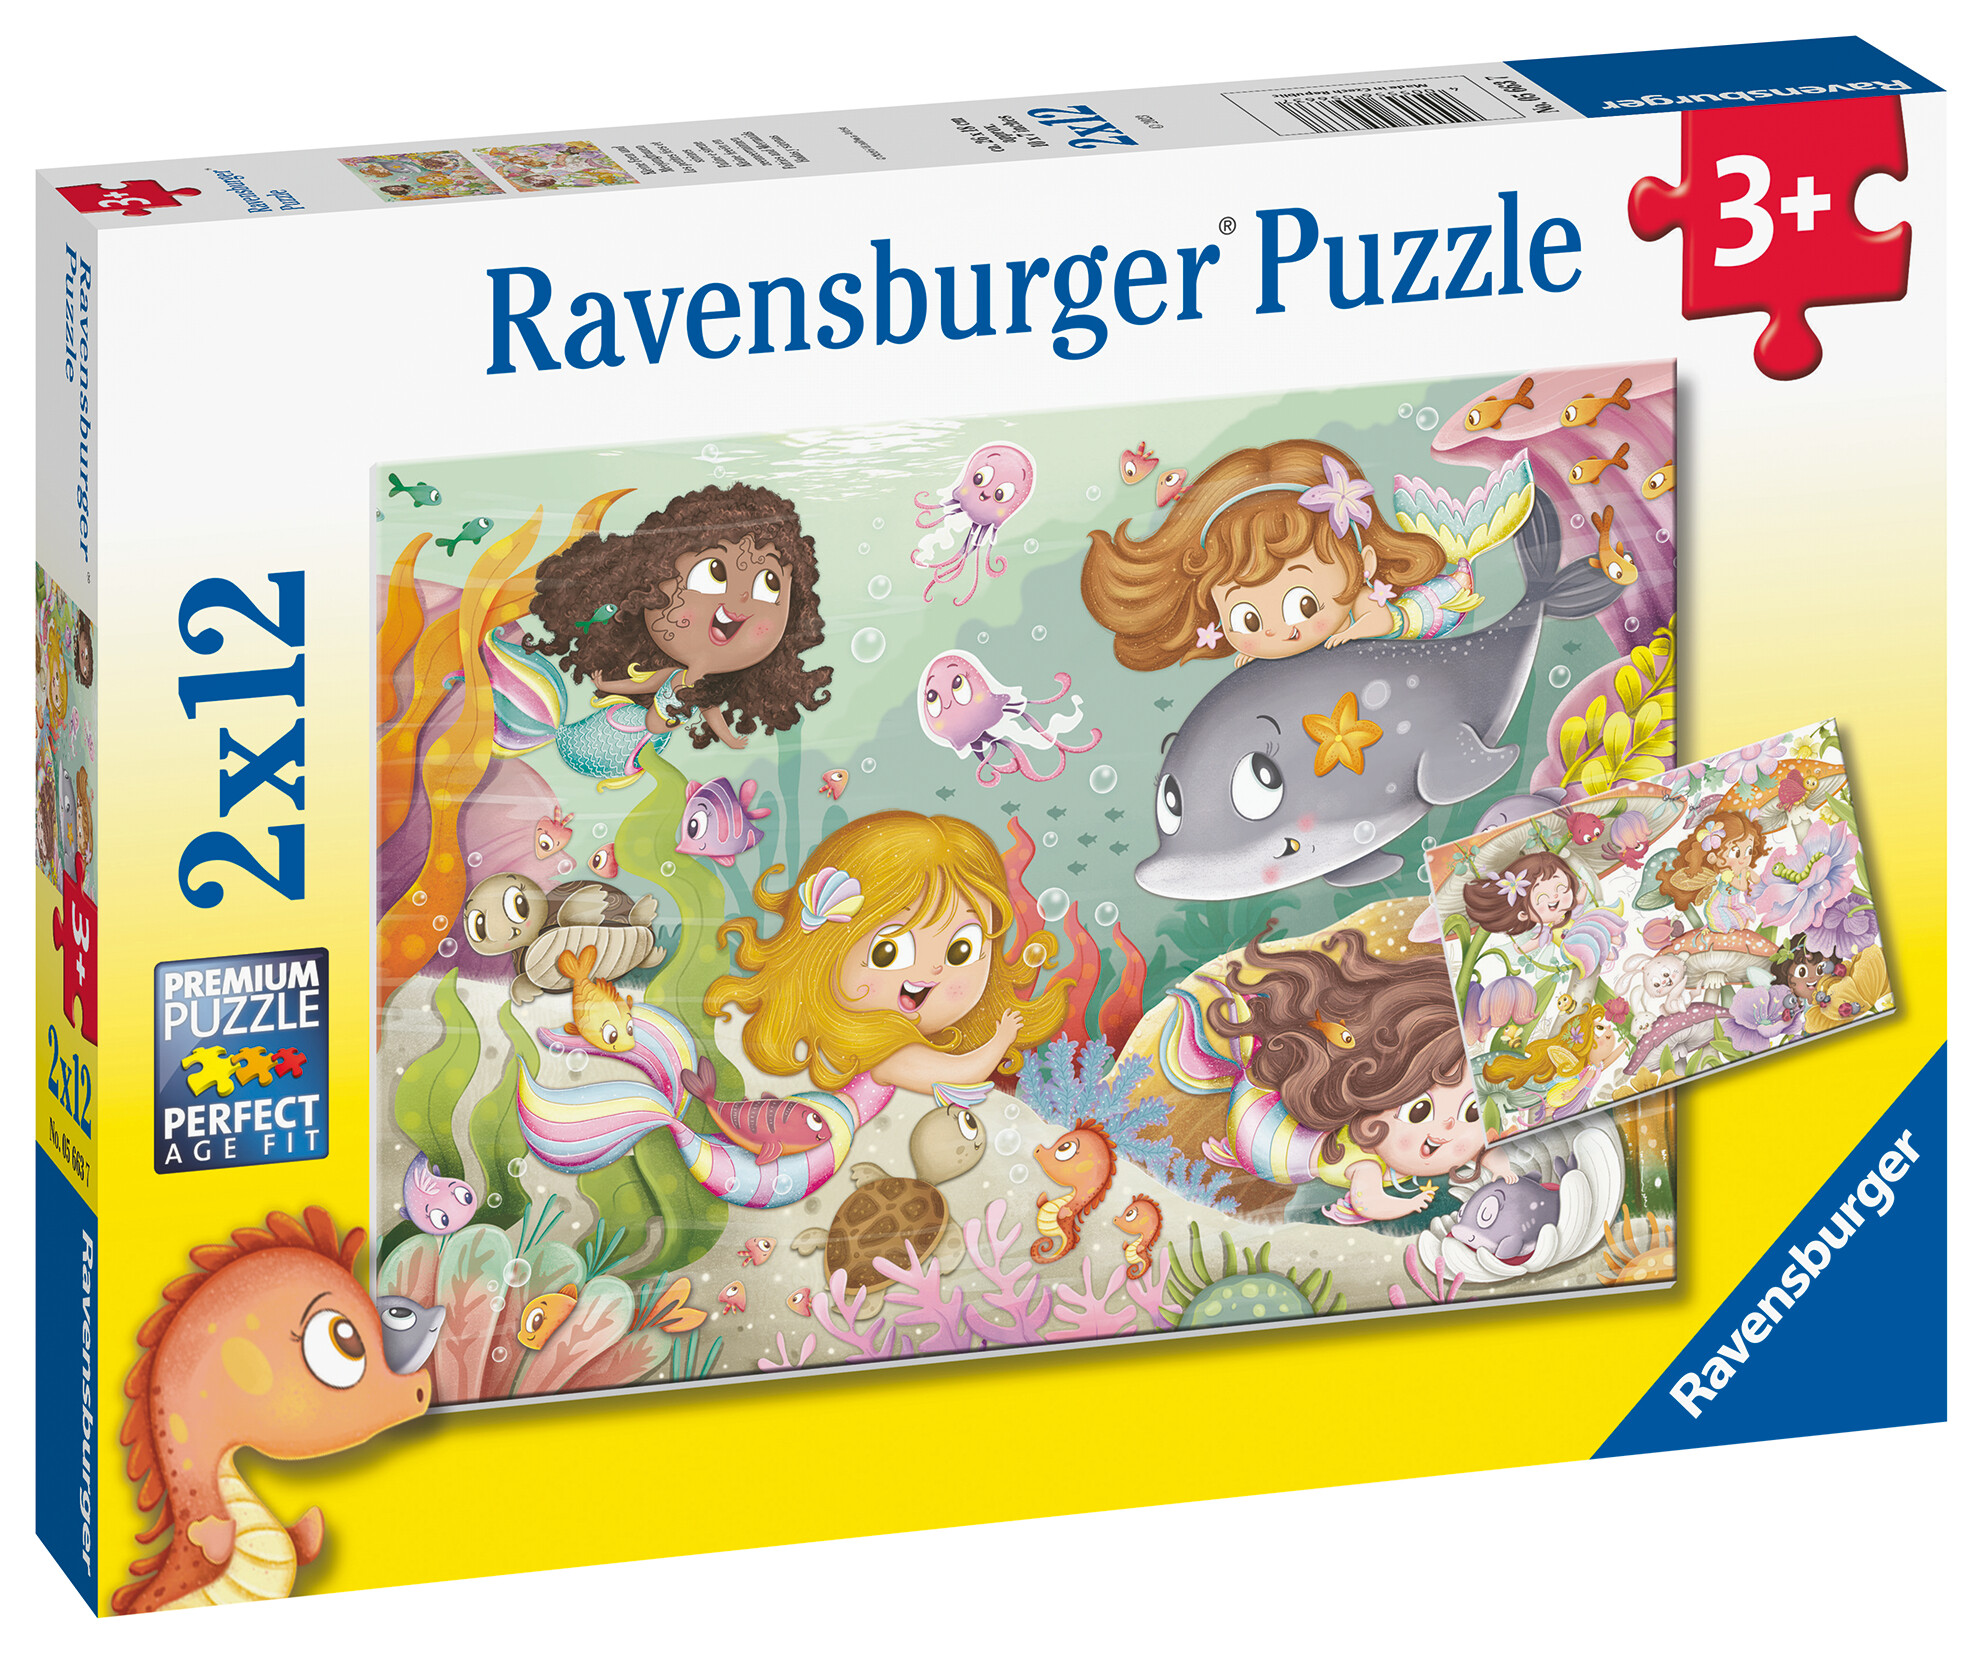 Ravensburger - puzzle illustrato fatine e sirene, collezione 2x12, 2 puzzle da 12 pezzi, età raccomandata 3+ anni - RAVENSBURGER